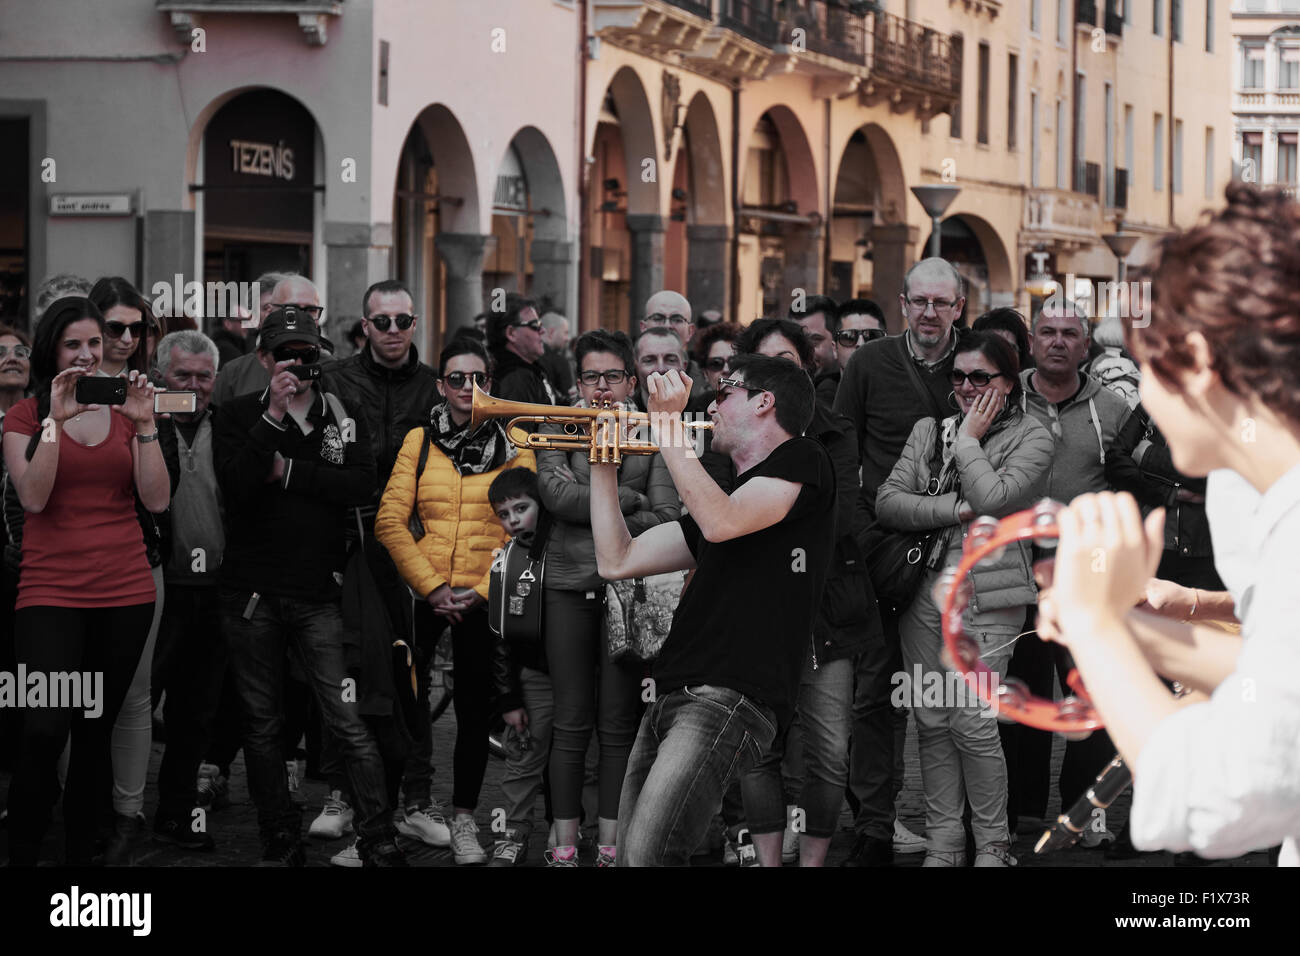 L'accent sur le musicien de rue à jouer de la trompette vu par une foule avec fille jouant le tambourin en premier plan Padova Italie Banque D'Images